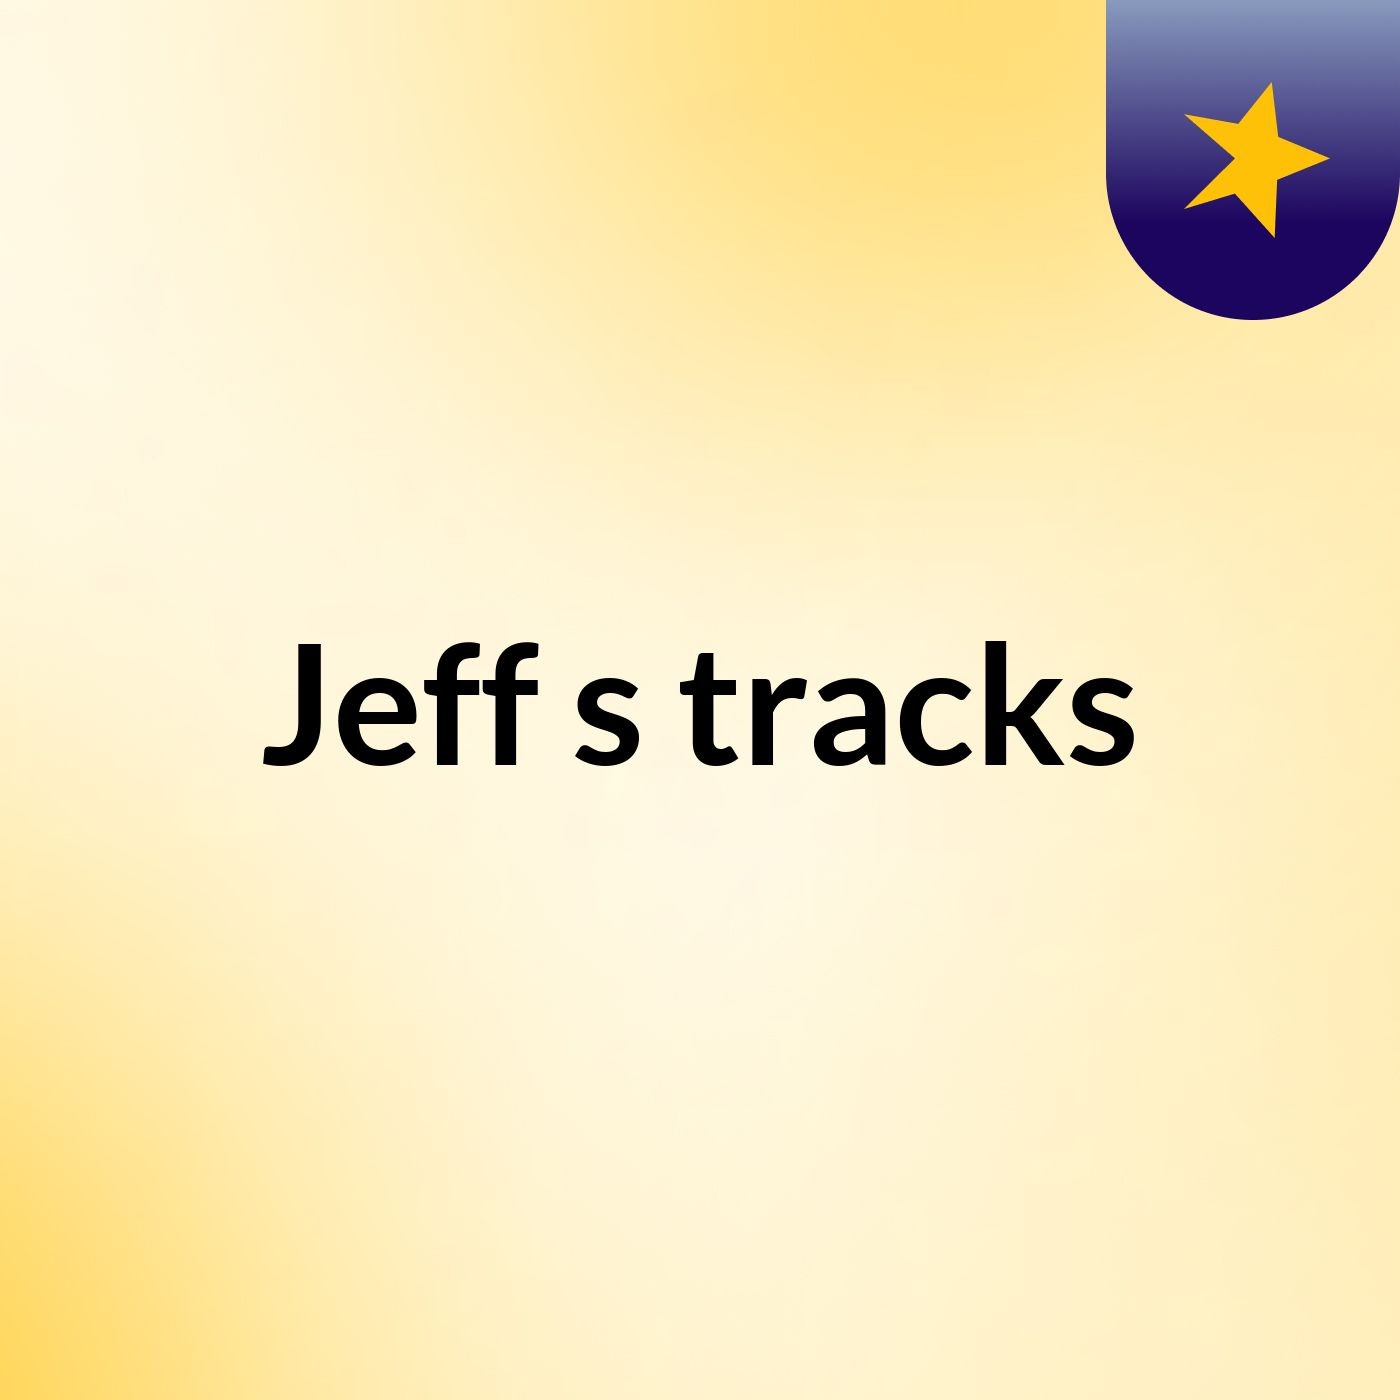 Jeff's tracks